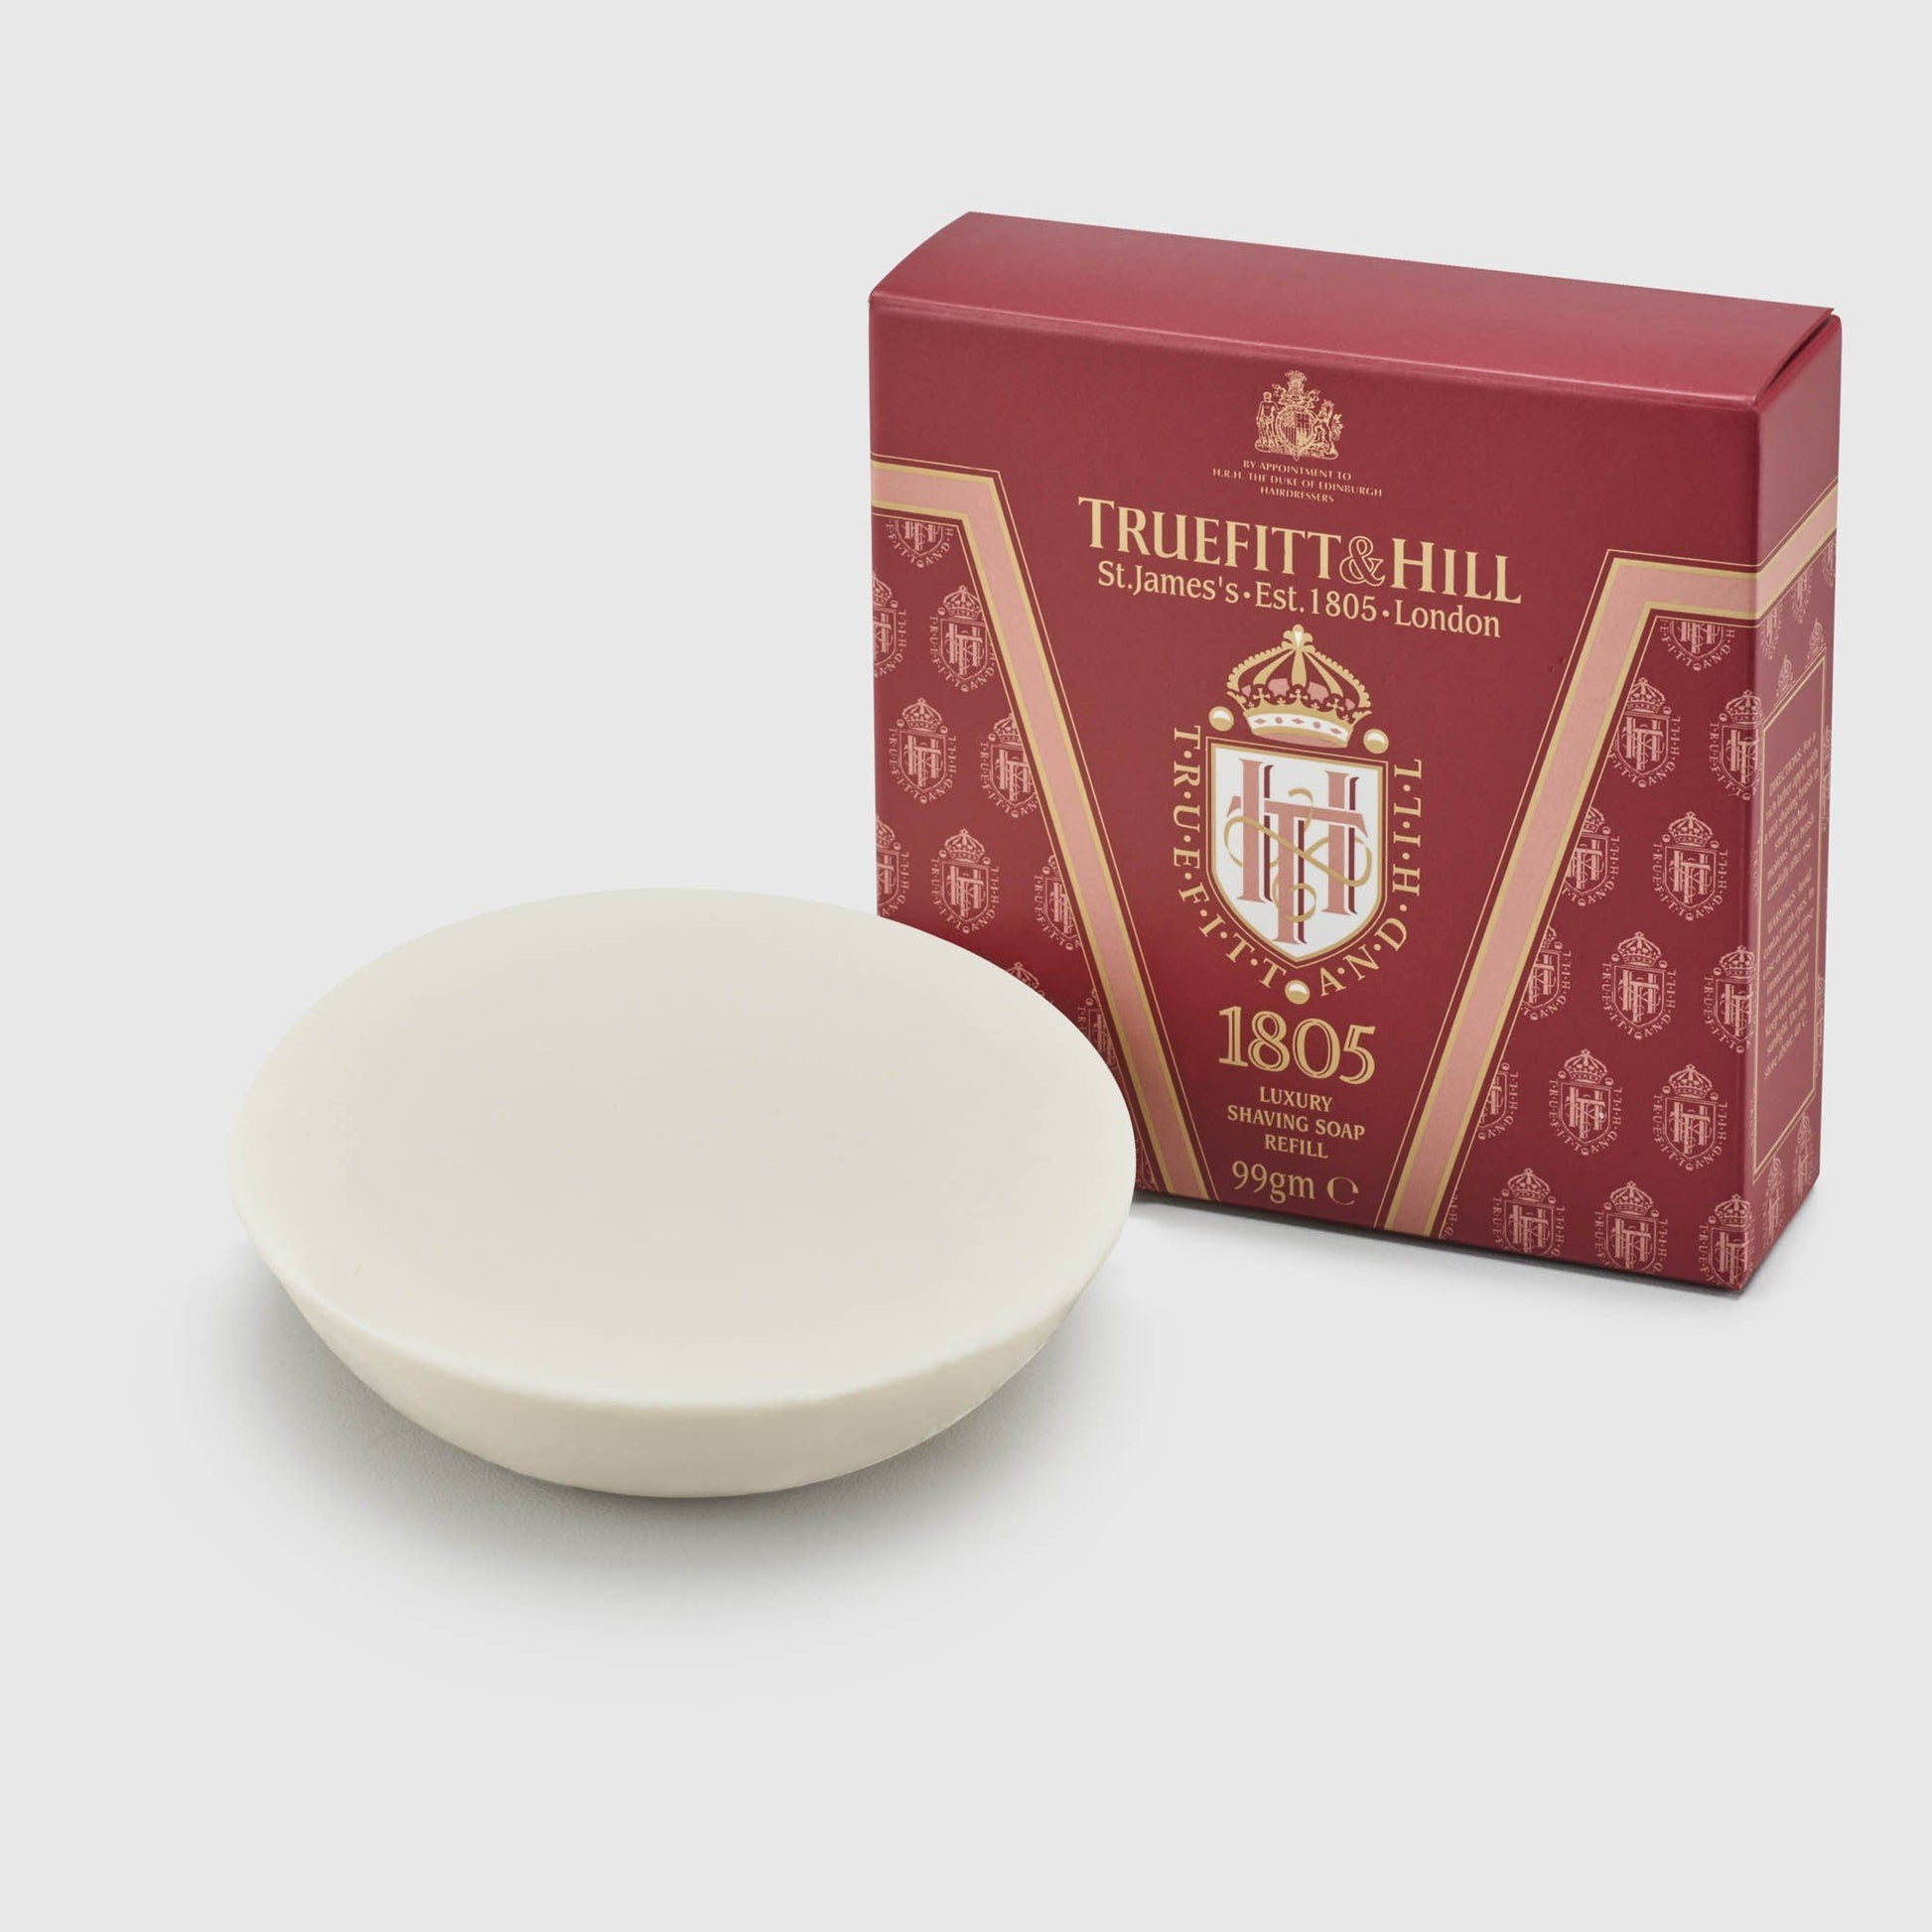 Truefitt & Hill Luxury Shaving Soap Refill - 1805 Shave Products Truefitt & Hill 